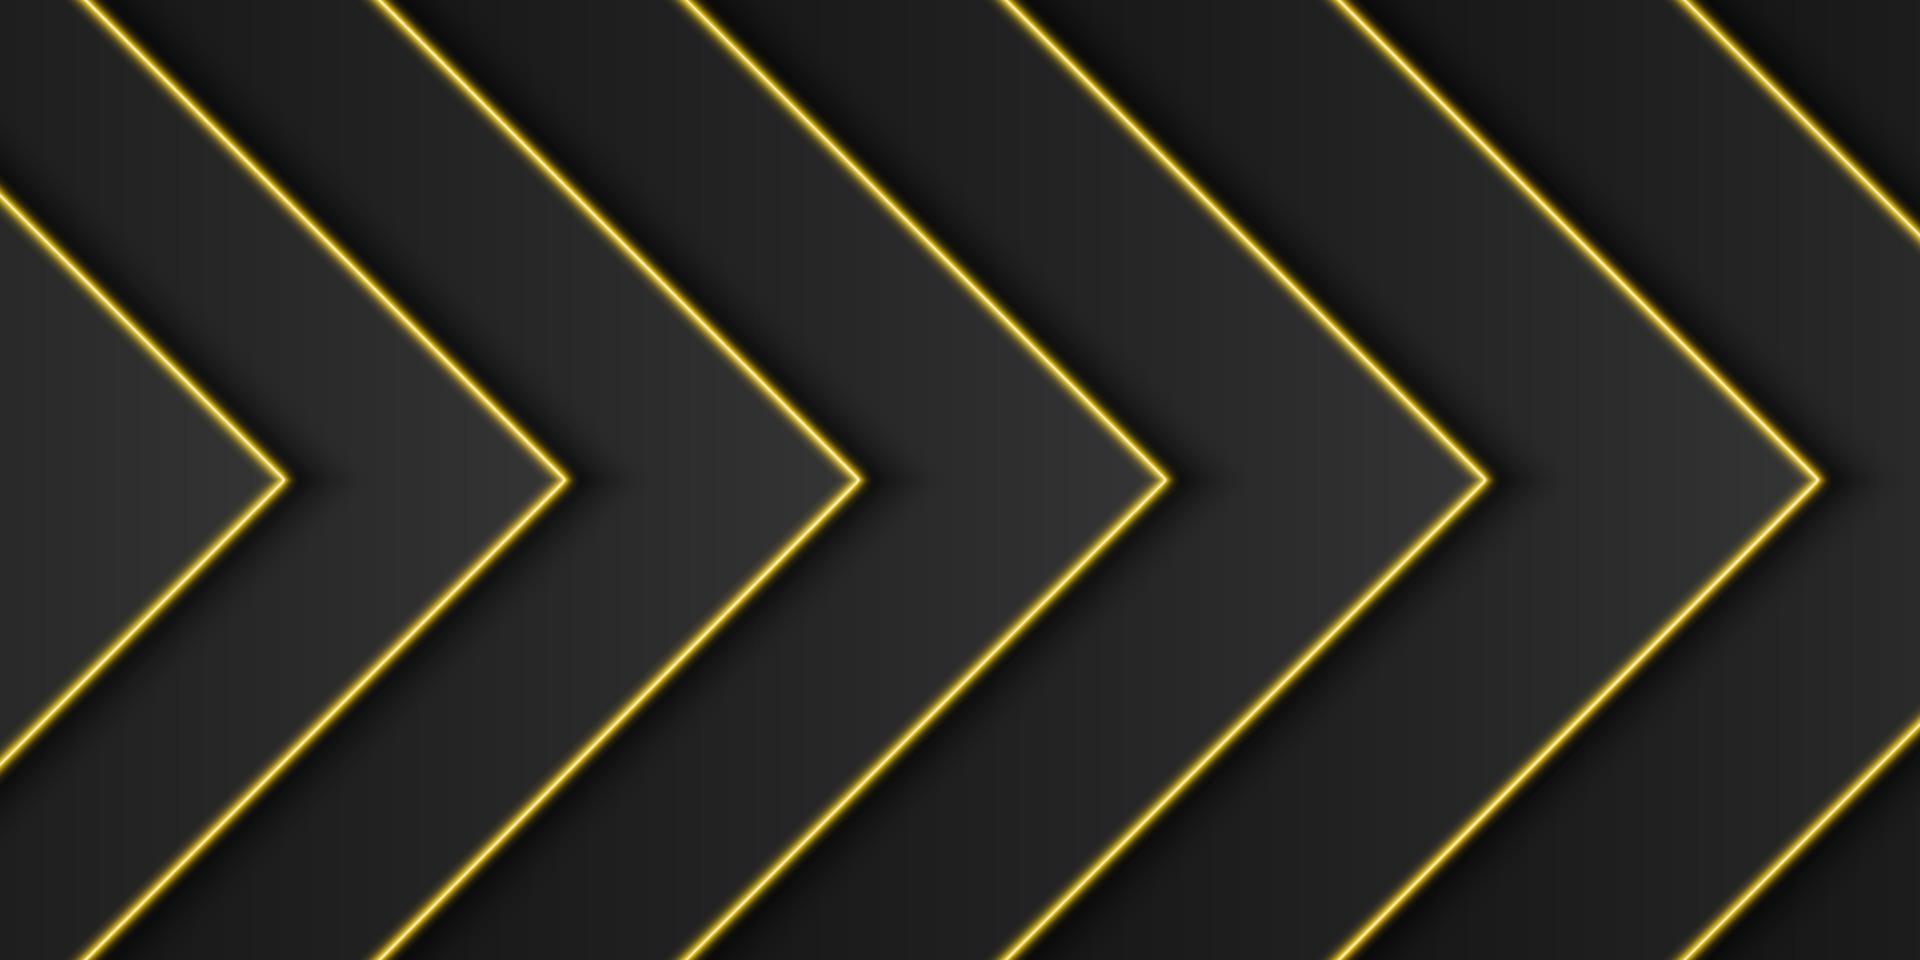 Fondo de marco negro metálico dorado abstracto, capa de superposición triangular con línea de luz amarilla, forma de flecha o triángulo, diseño minimalista oscuro con espacio de copia, ilustración vectorial vector